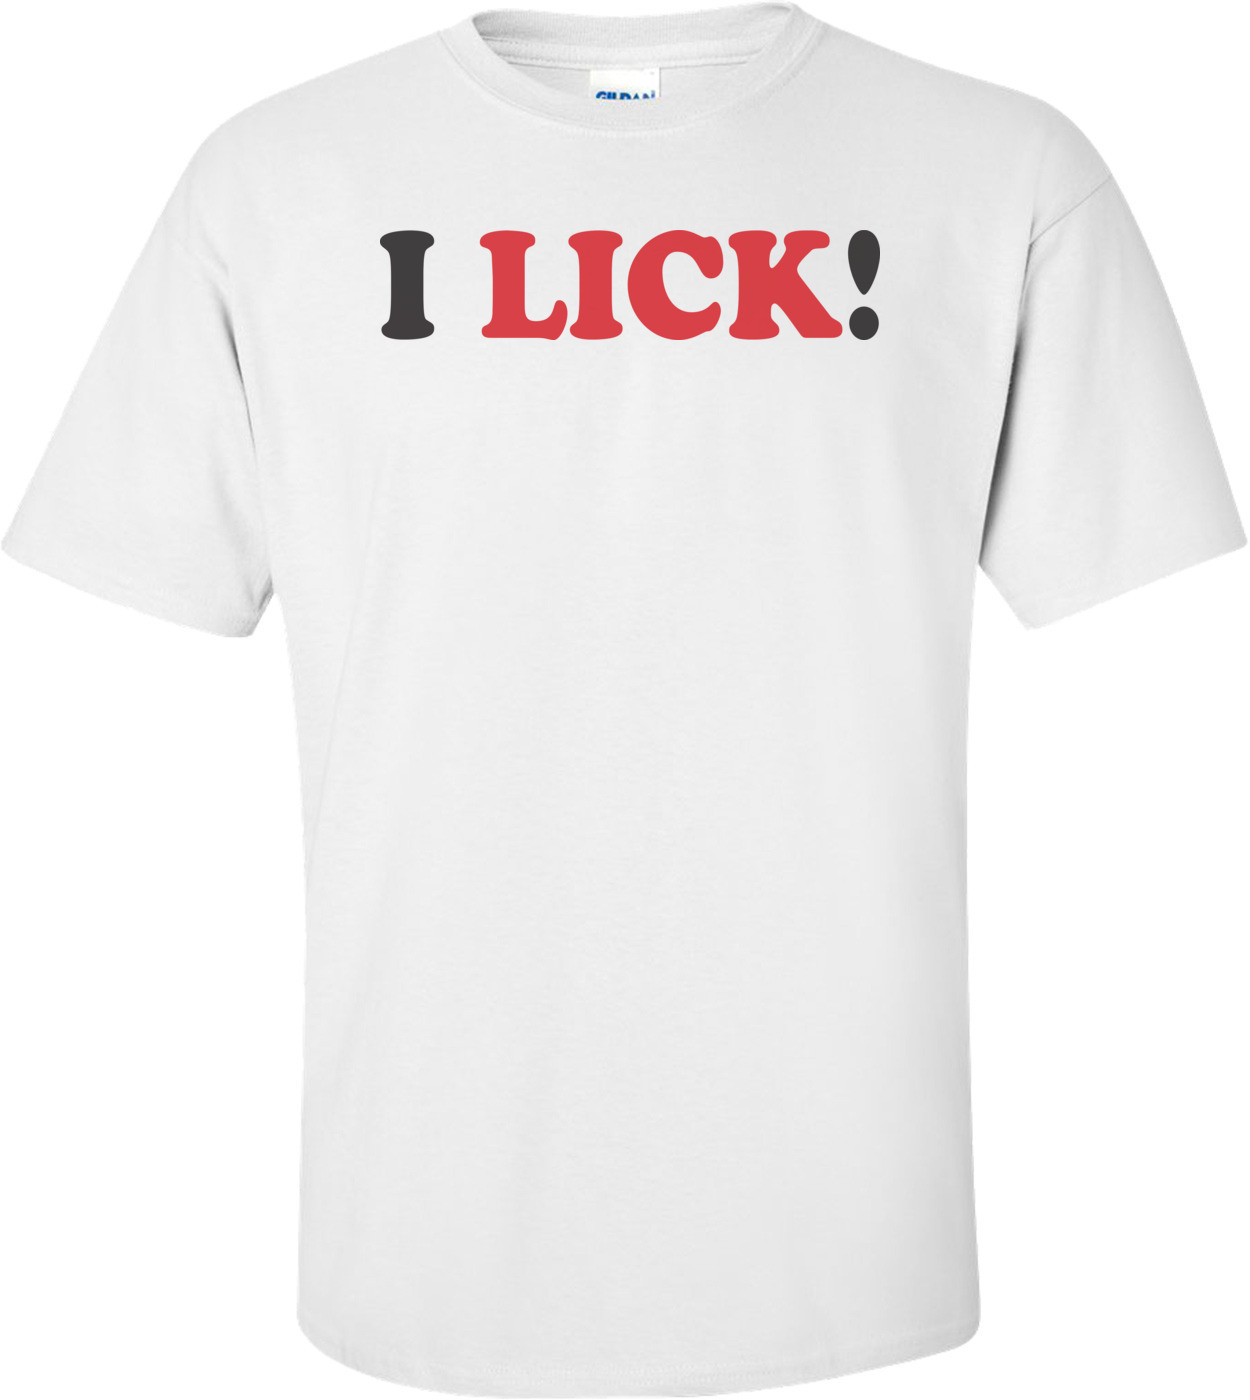 I Lick T-shirt